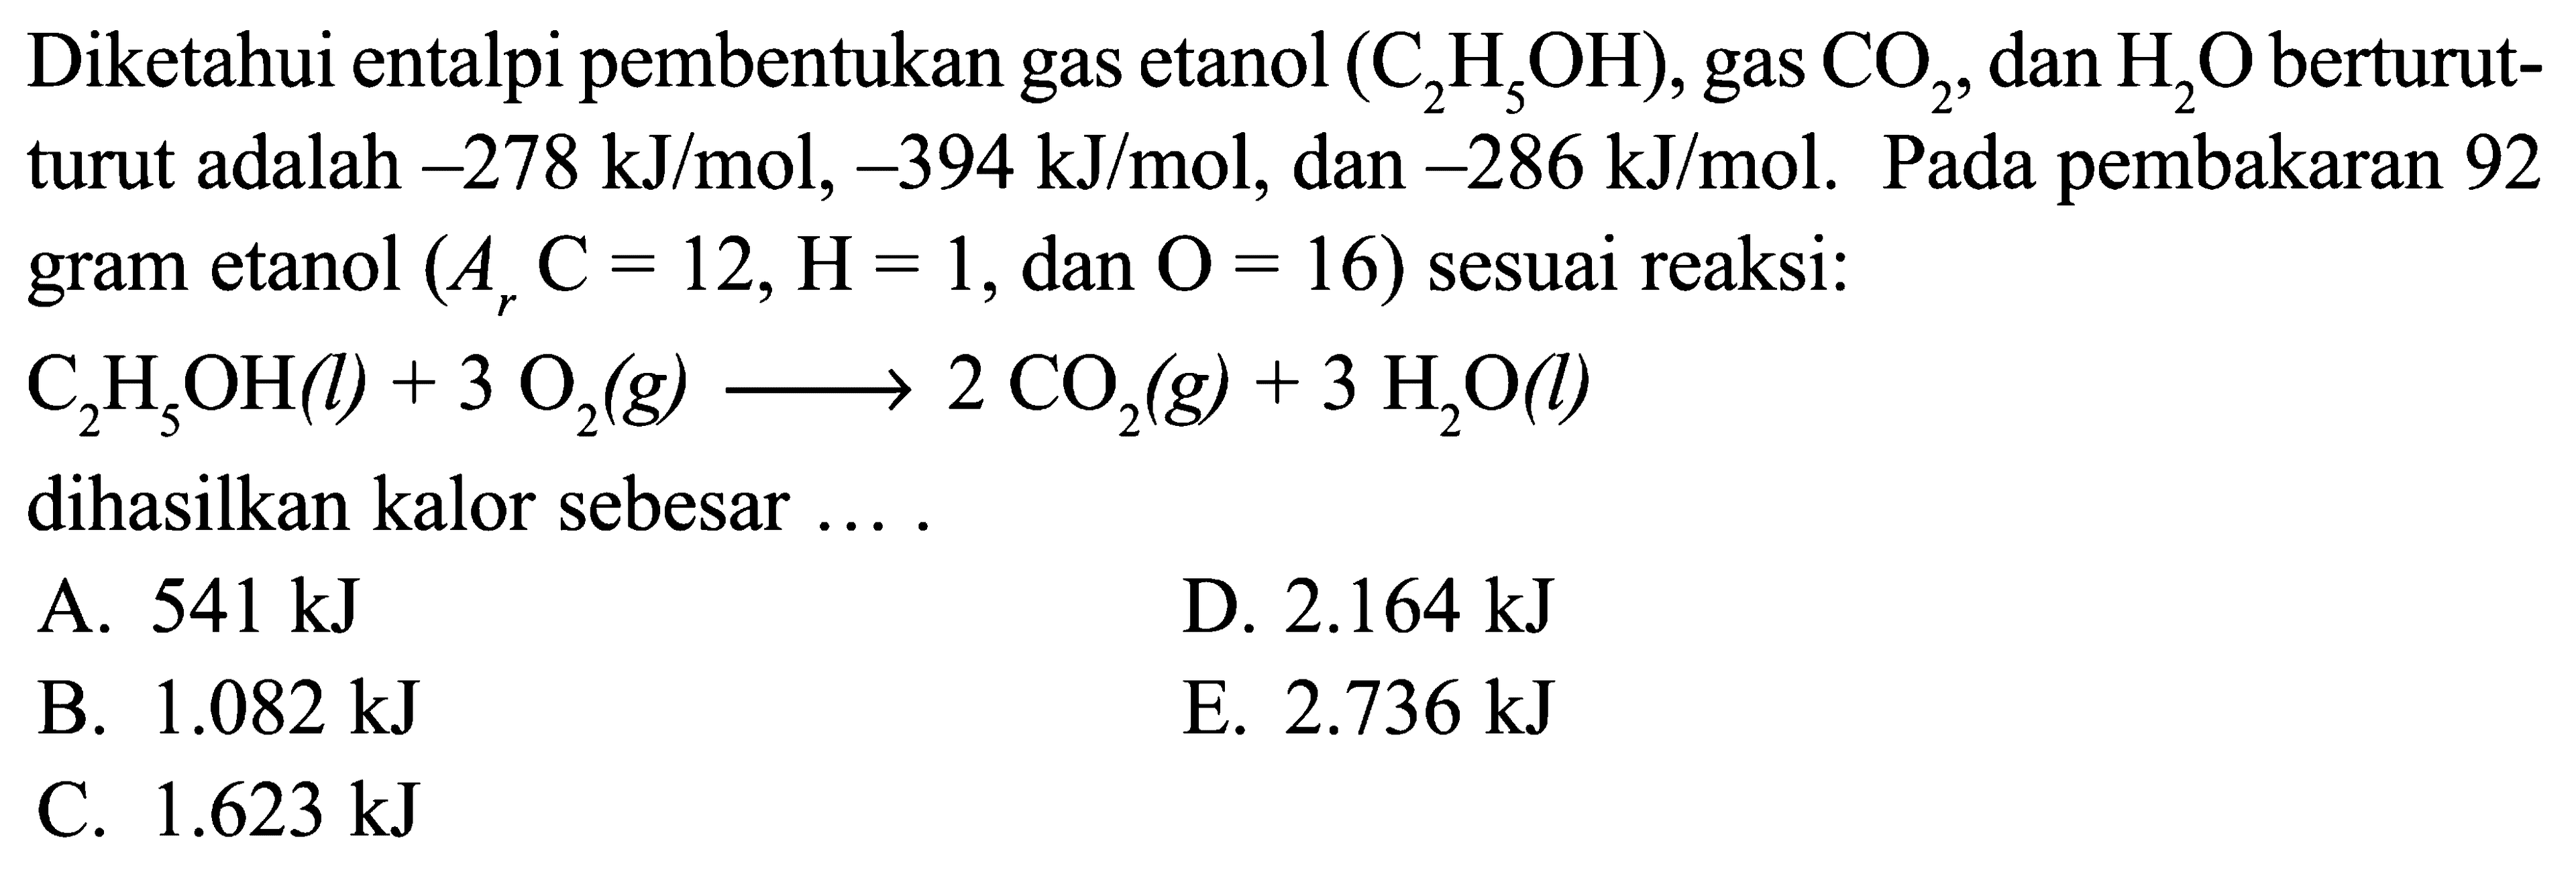 Diketahui entalpi pembentukan gas etanol (C2H5OH), gas CO2, dan H2O berturut- turut adalah -278 kJ/mol, -394 kJ/mol, dan -286 kJ/mol. Pada pembakaran 92 gram etanol (Ar C = 12, H = 1, dan O = 16) sesuai reaksi: C2H5OH (l) + 3 O2 (g) -> 2 CO2 (g) + 3 H2O (l) dihasilkan kalor sebesar ....